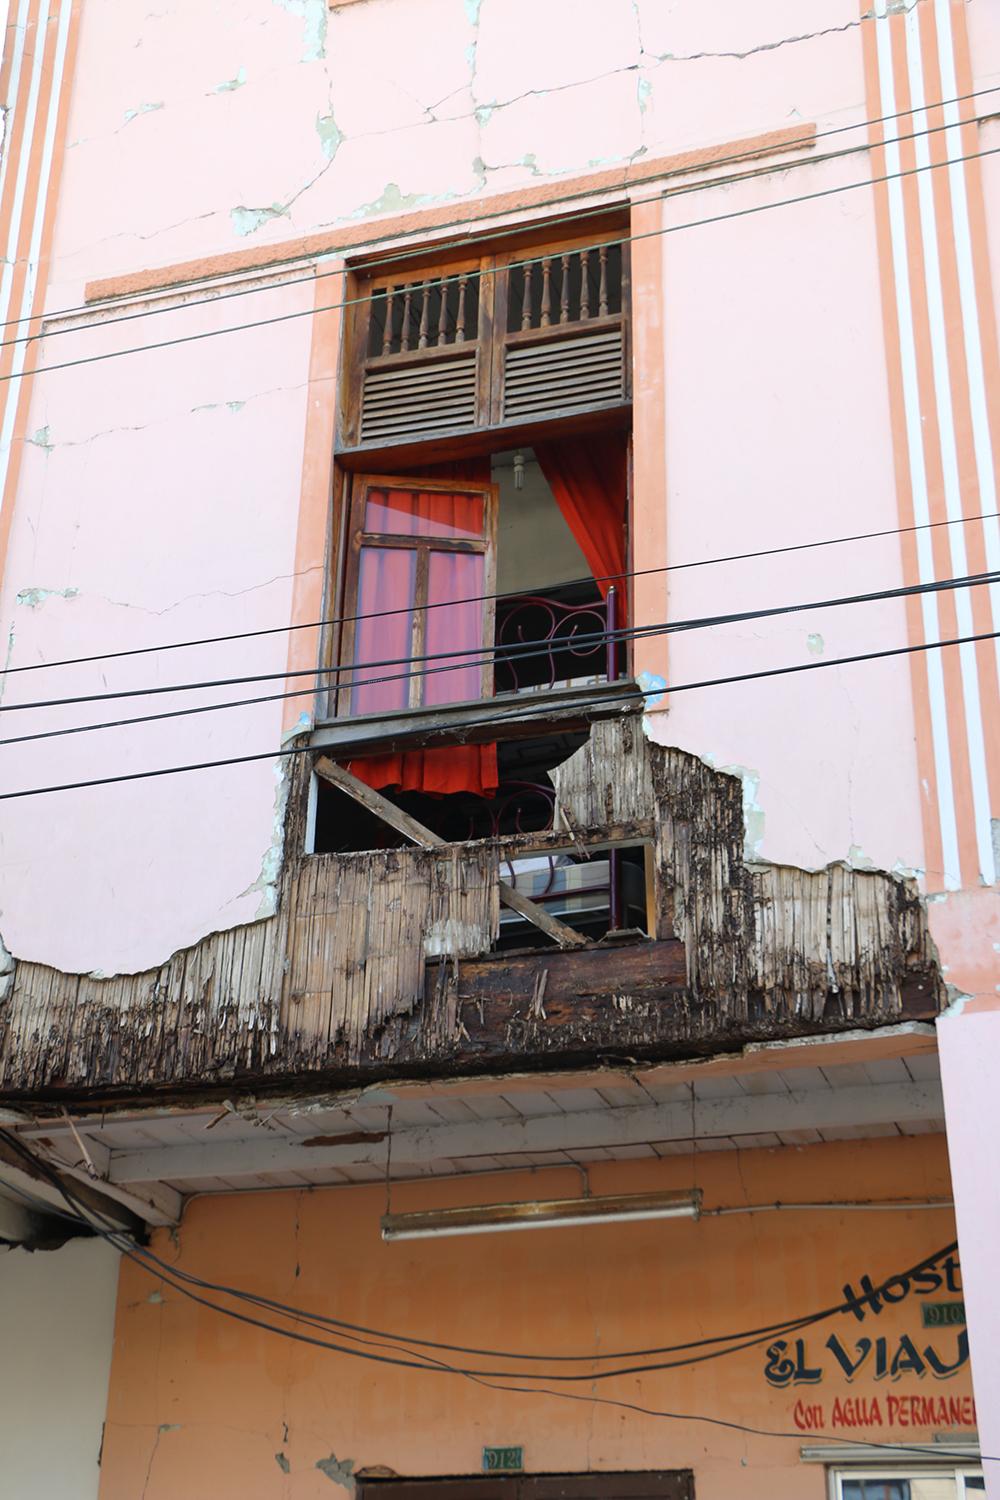  Fachada frontal de una casa afectada en la calle Virgilio Ratti del centro de Bahía | Foto: M. Ayala 